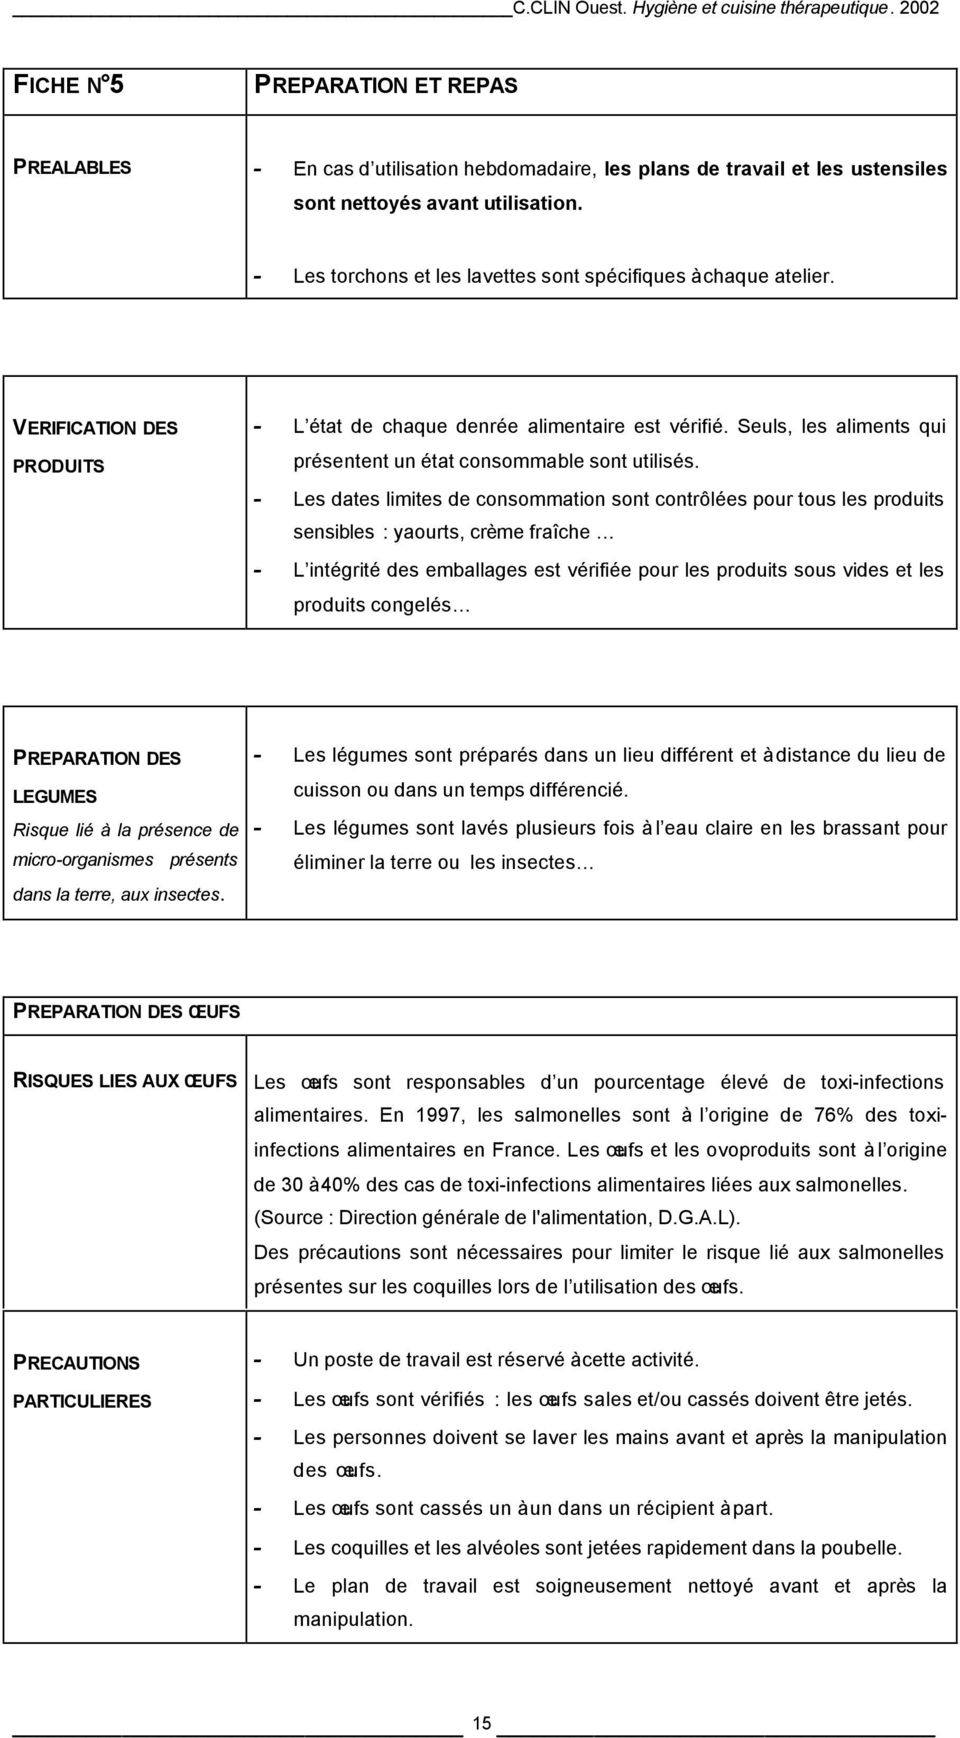 PDF Télécharger grille d'évaluation cuisine Gratuit PDF ...